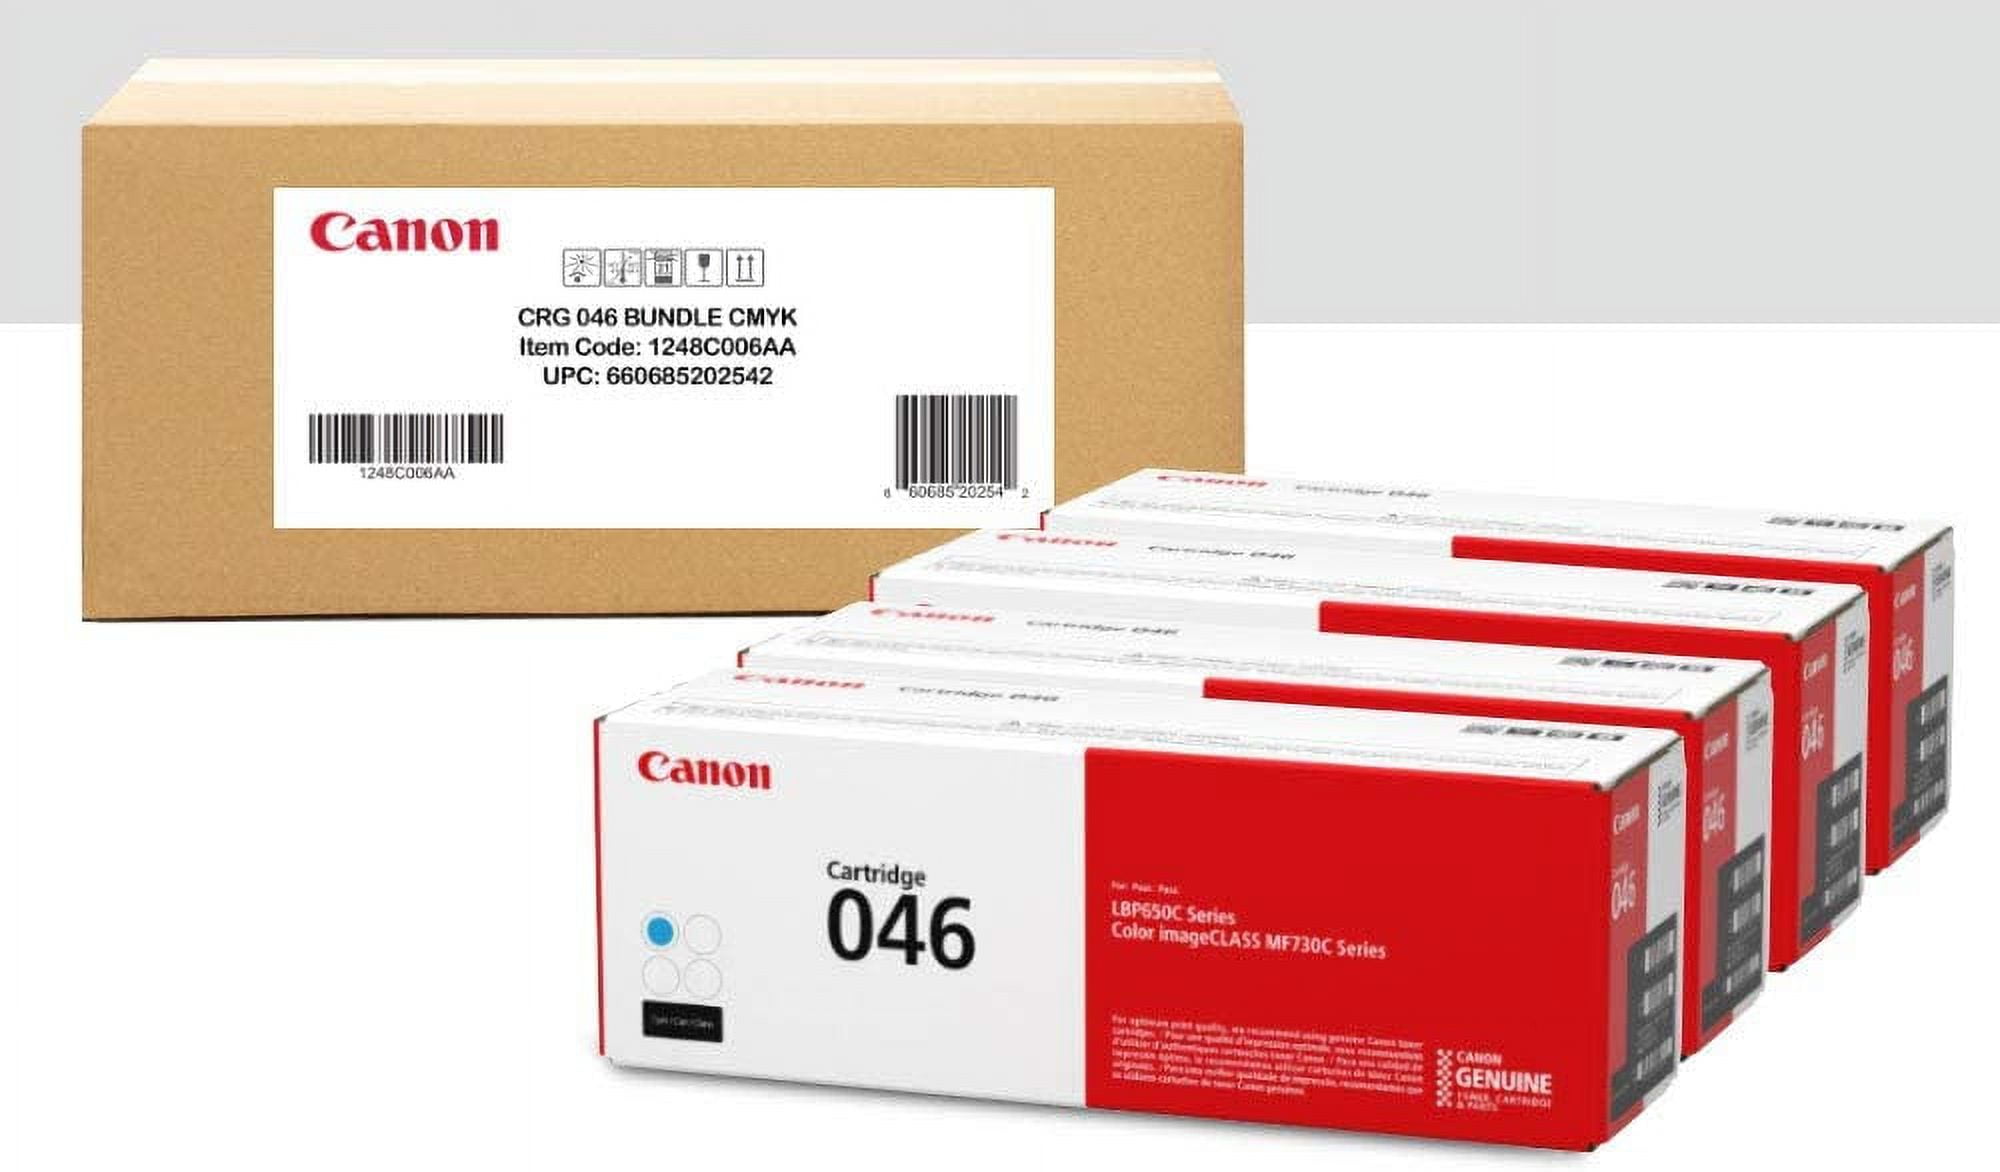 Canon 054 Toner Bundle Pack - 4 Cartridges - Compatible